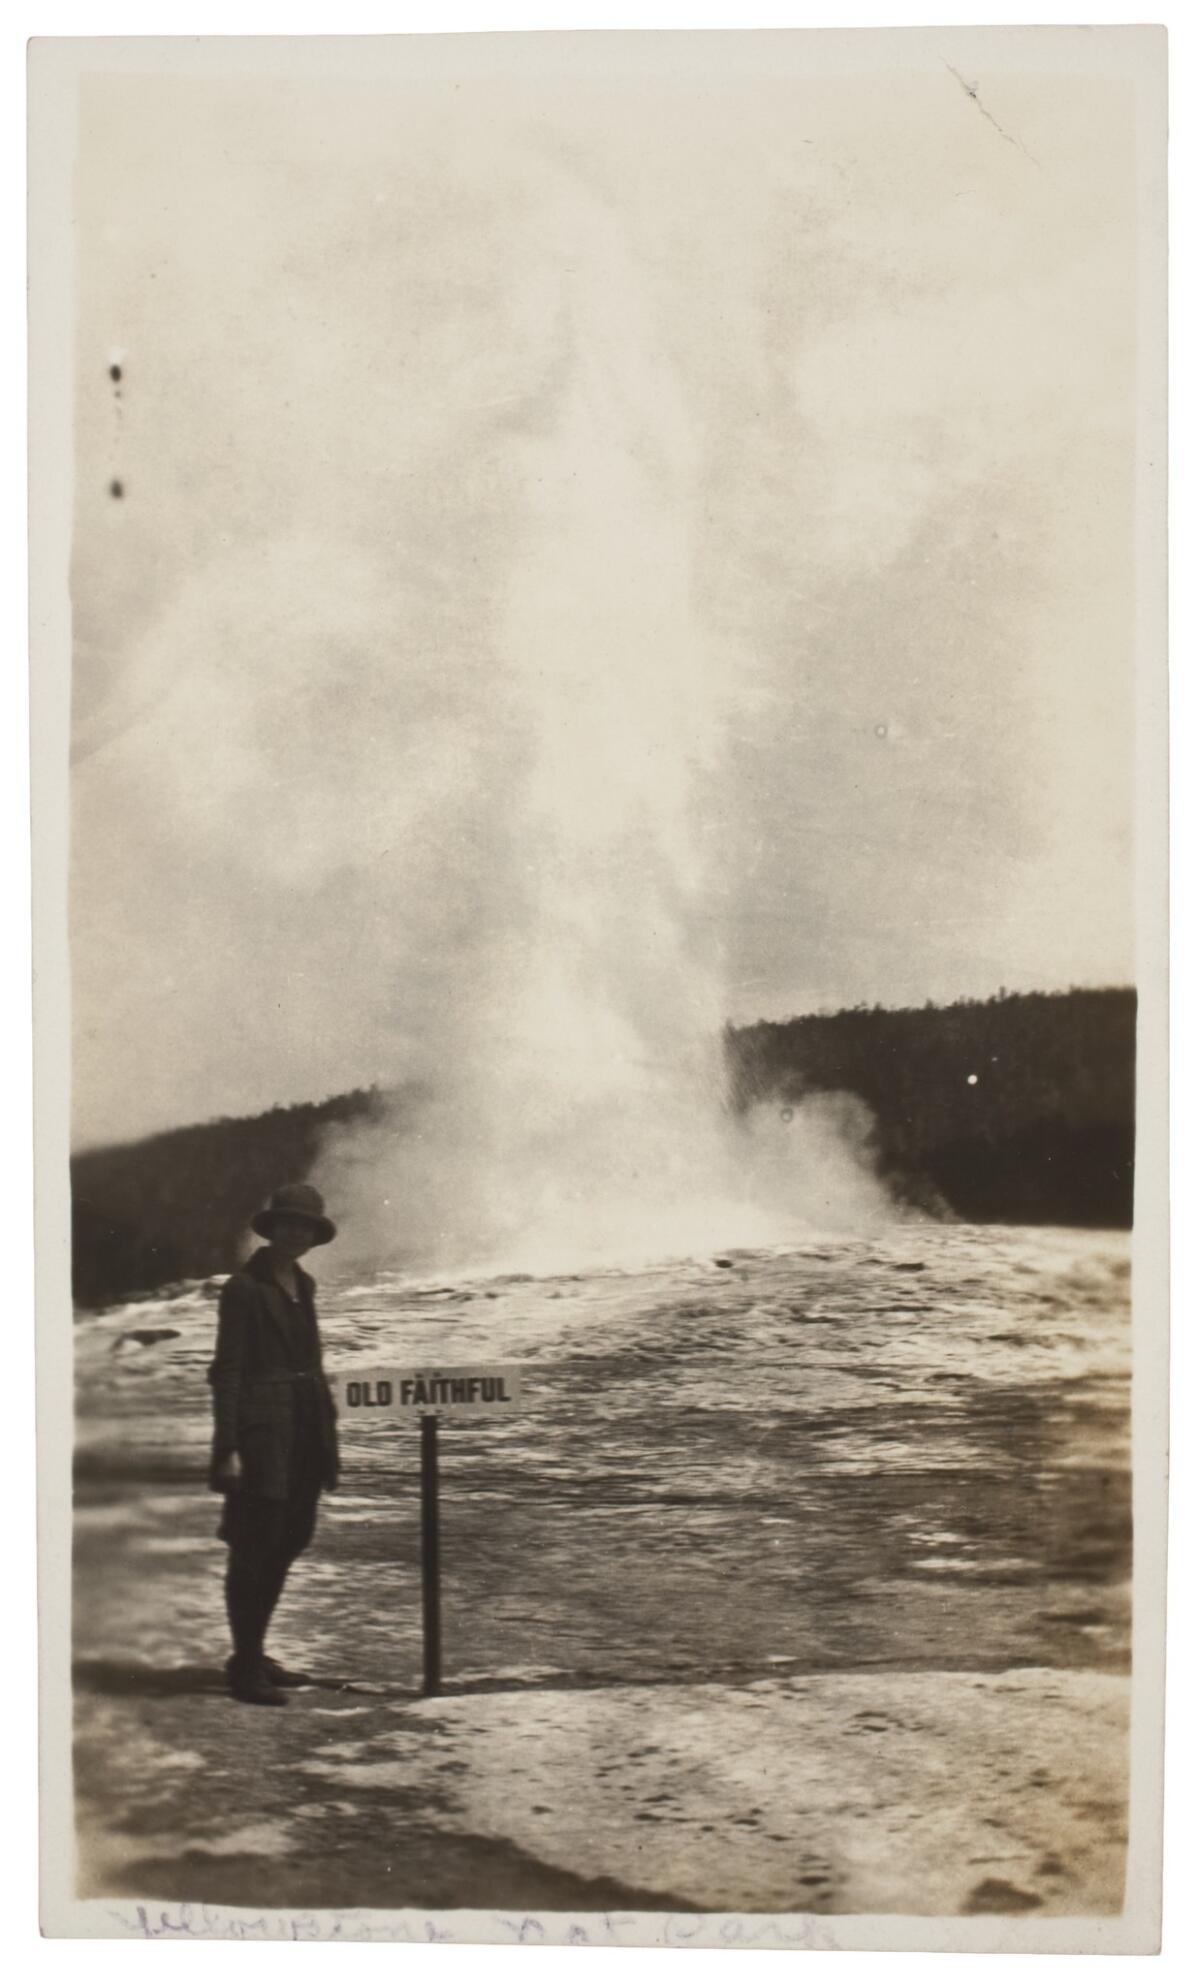 Fotógrafo desconocido, Géiser Old Faithful, Parque Nacional de Yellowstone, 1915 (cortesía del Museo George Eastman, regalo de Peter J. Cohen).